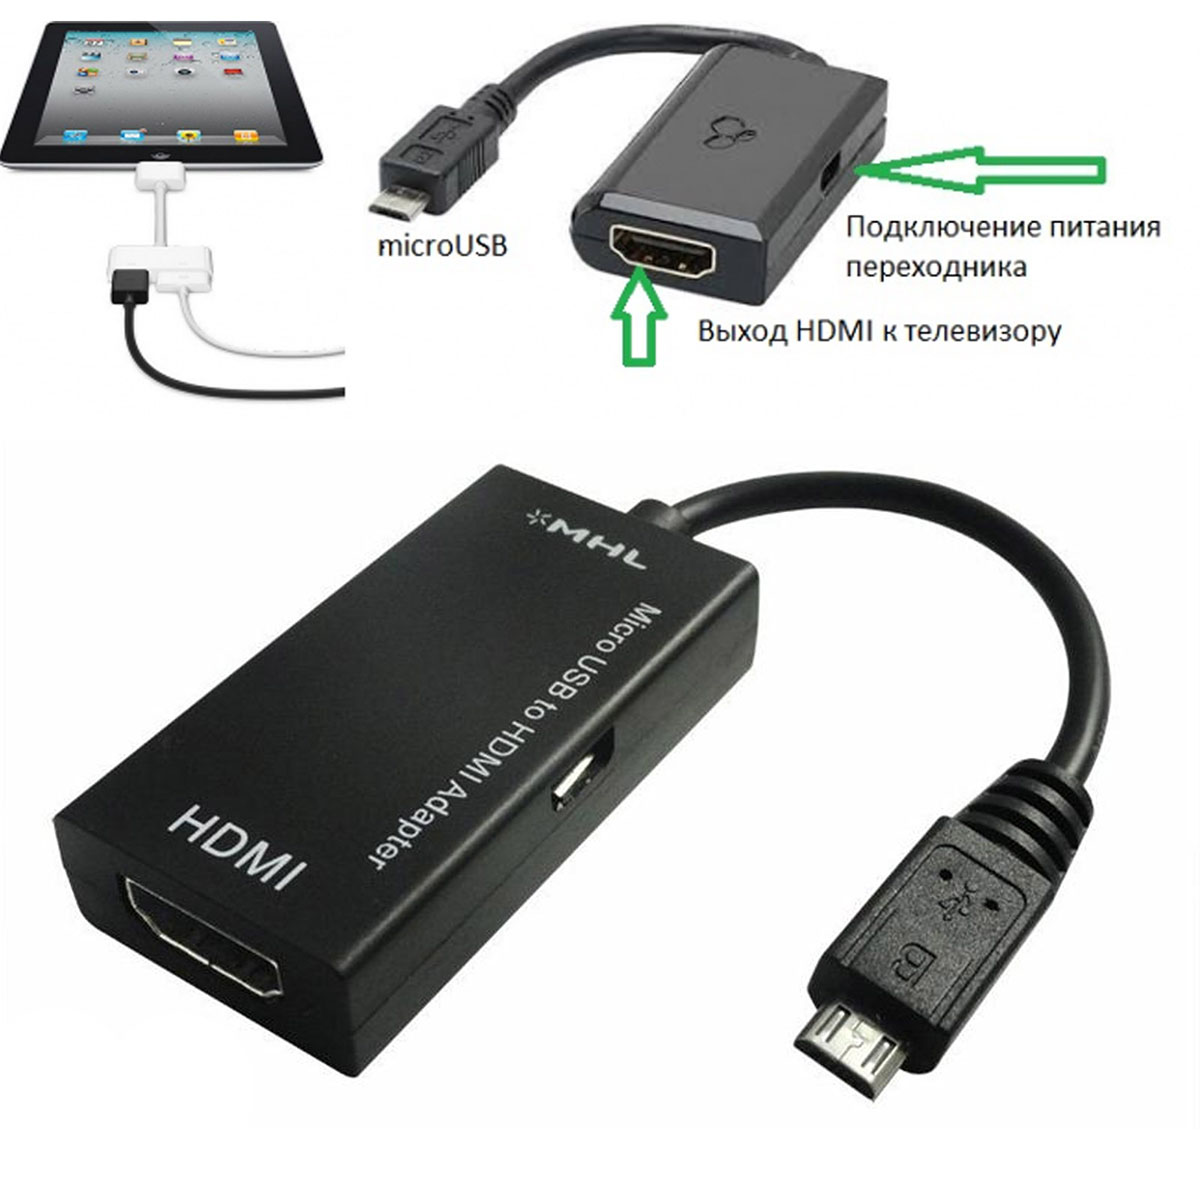 Адаптер / конвертер / переходник MHL для смартфонов, планшетных ПК с Micro USB на HDMI, цвет черный.